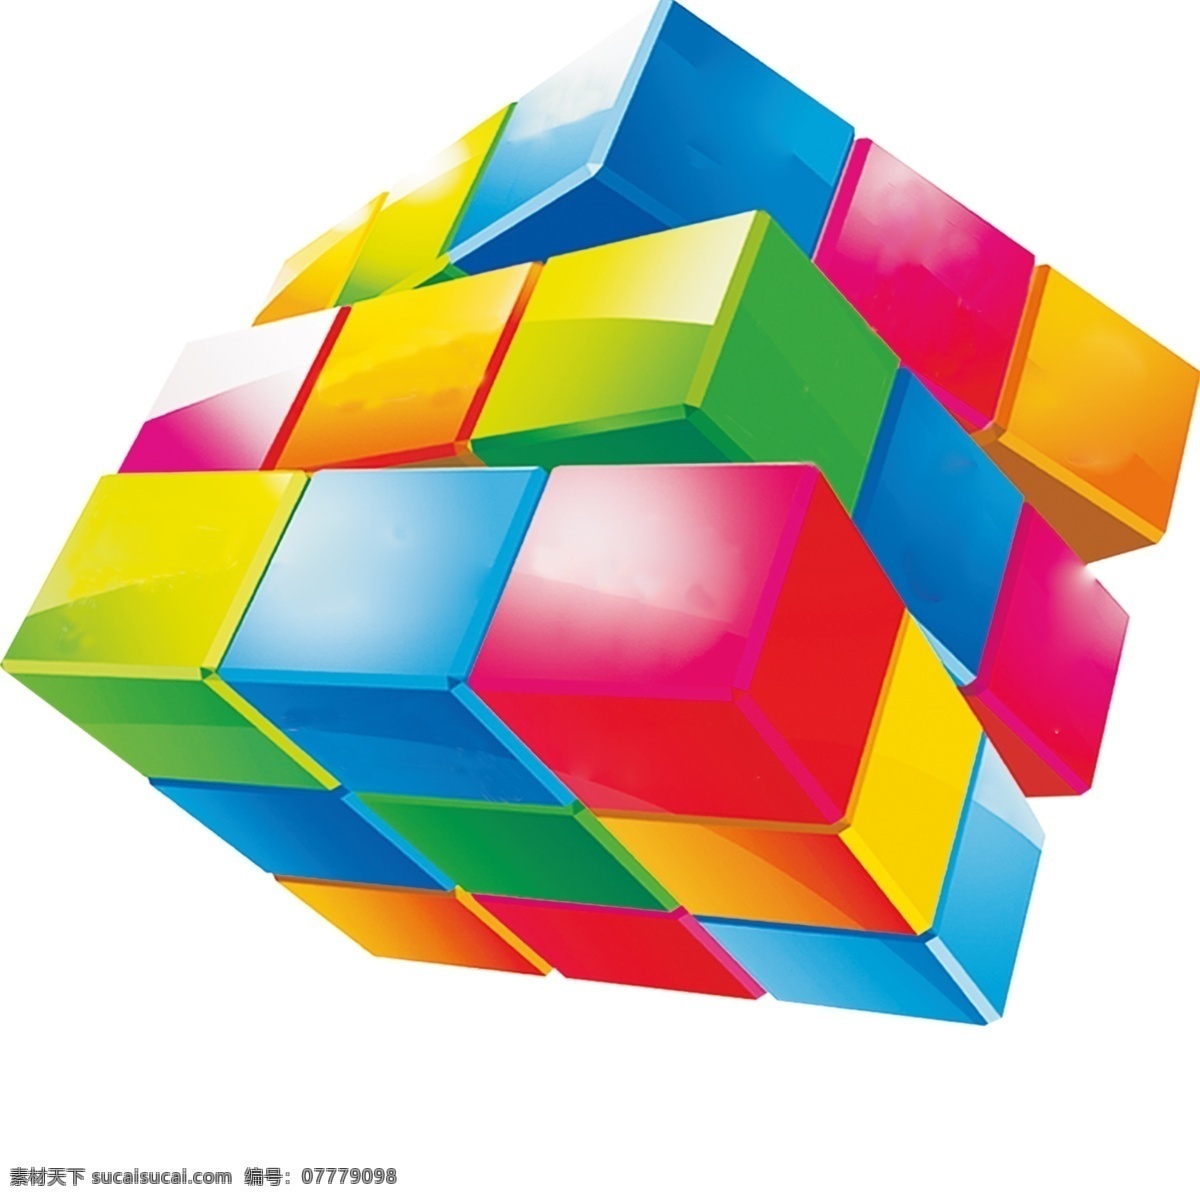 魔方 方块 彩色魔方 彩色方块 四方魔方 分层